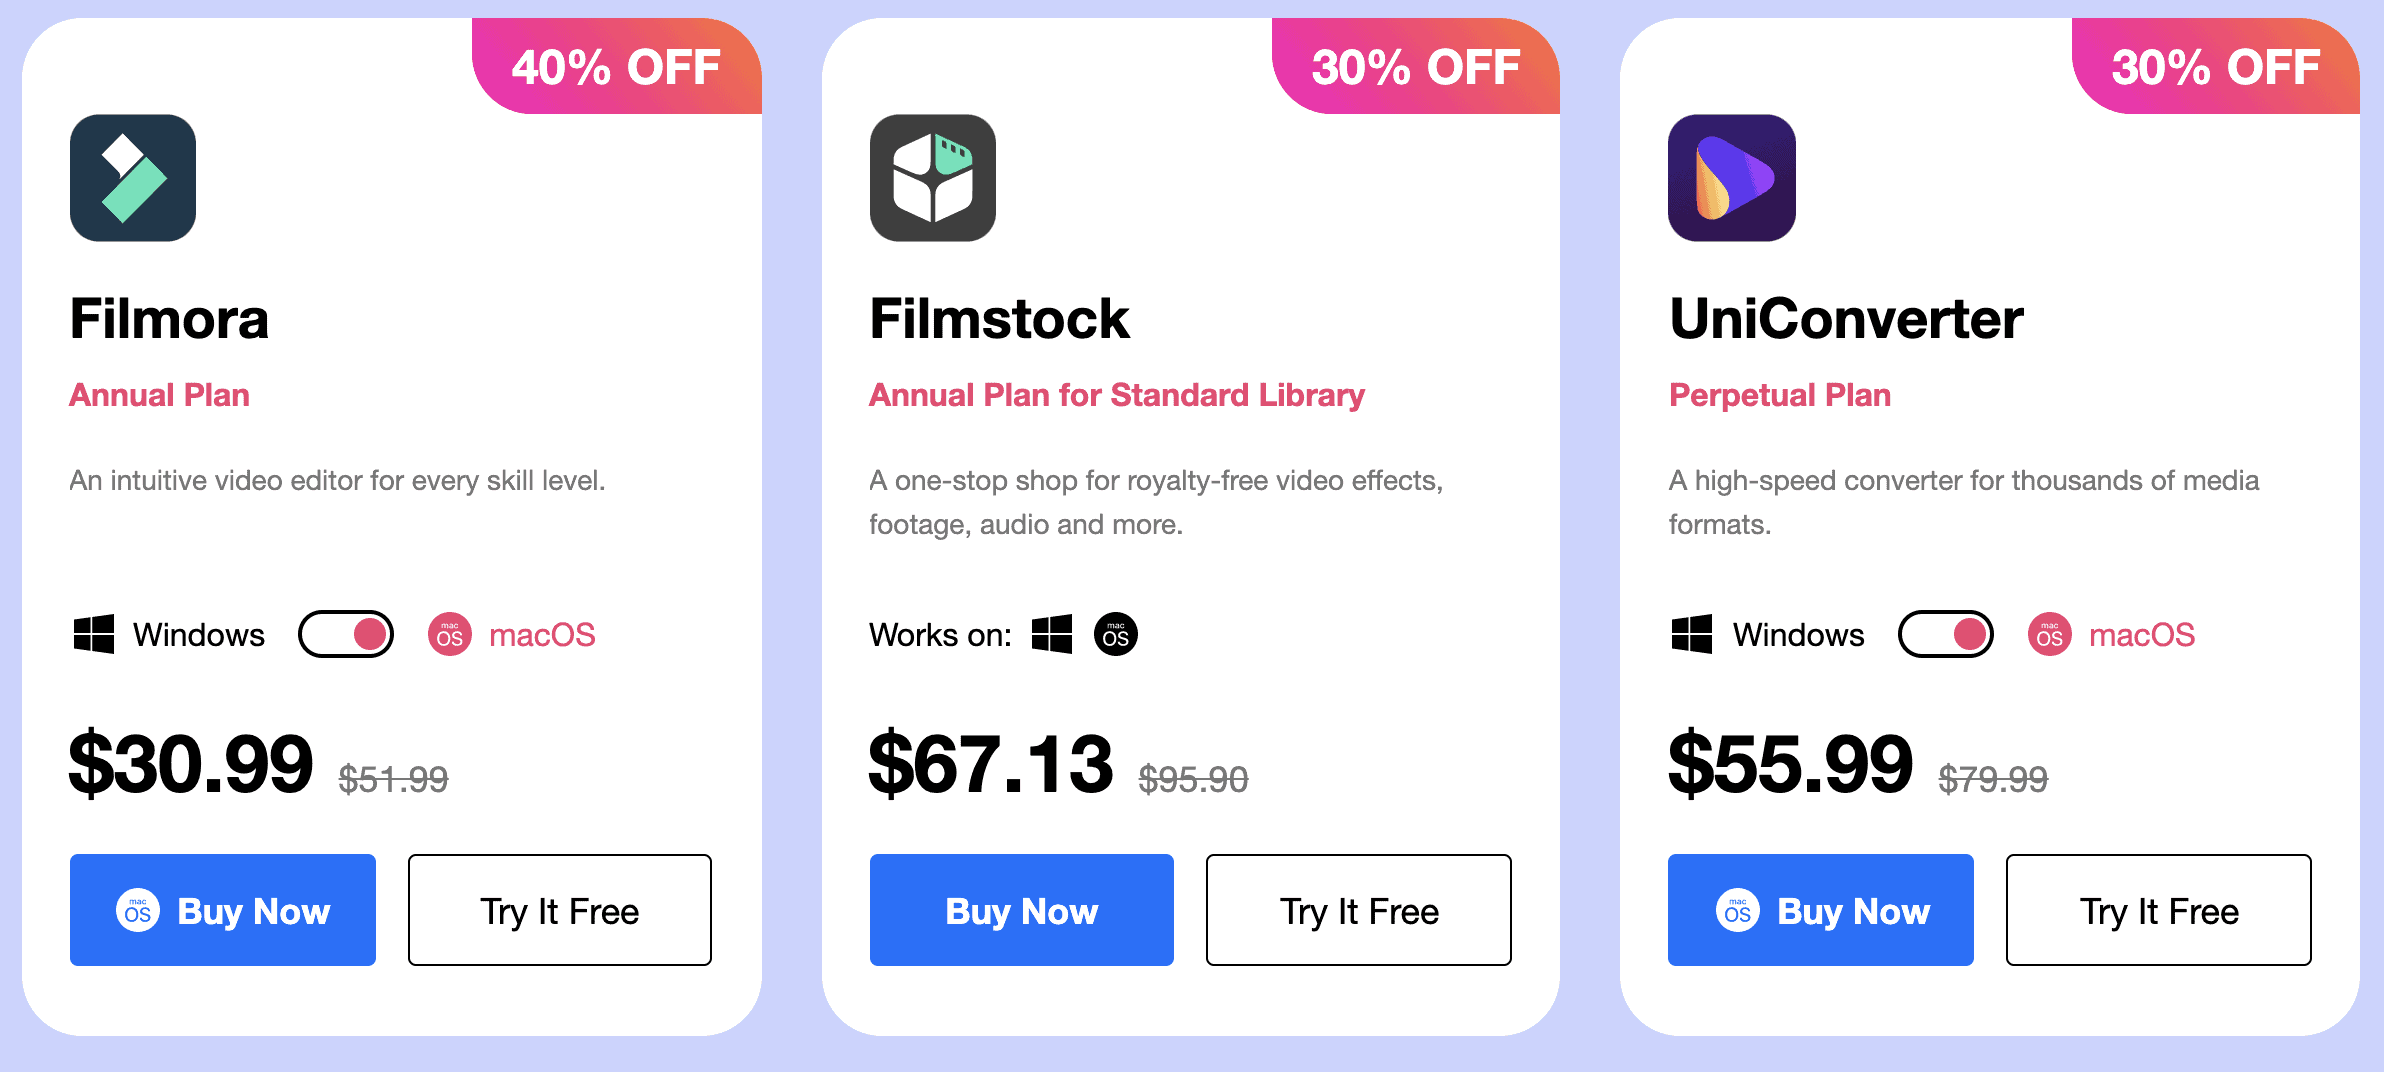 filmora coupon code